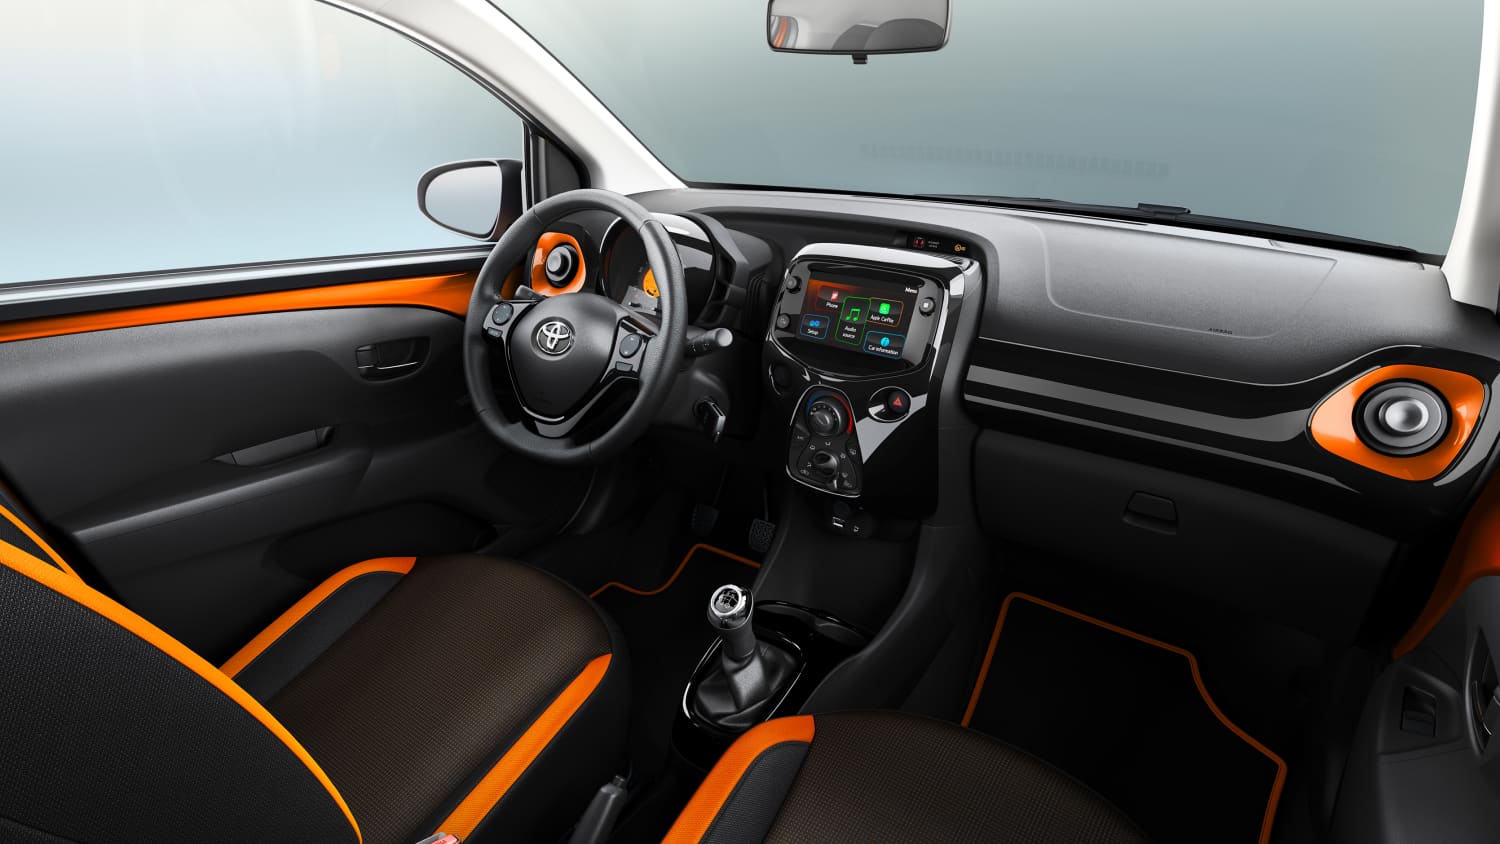 Serienmäßig mehr Ausstattung und Sicherheit: Toyota Aygo bekommt ein Update  - Nürnberg